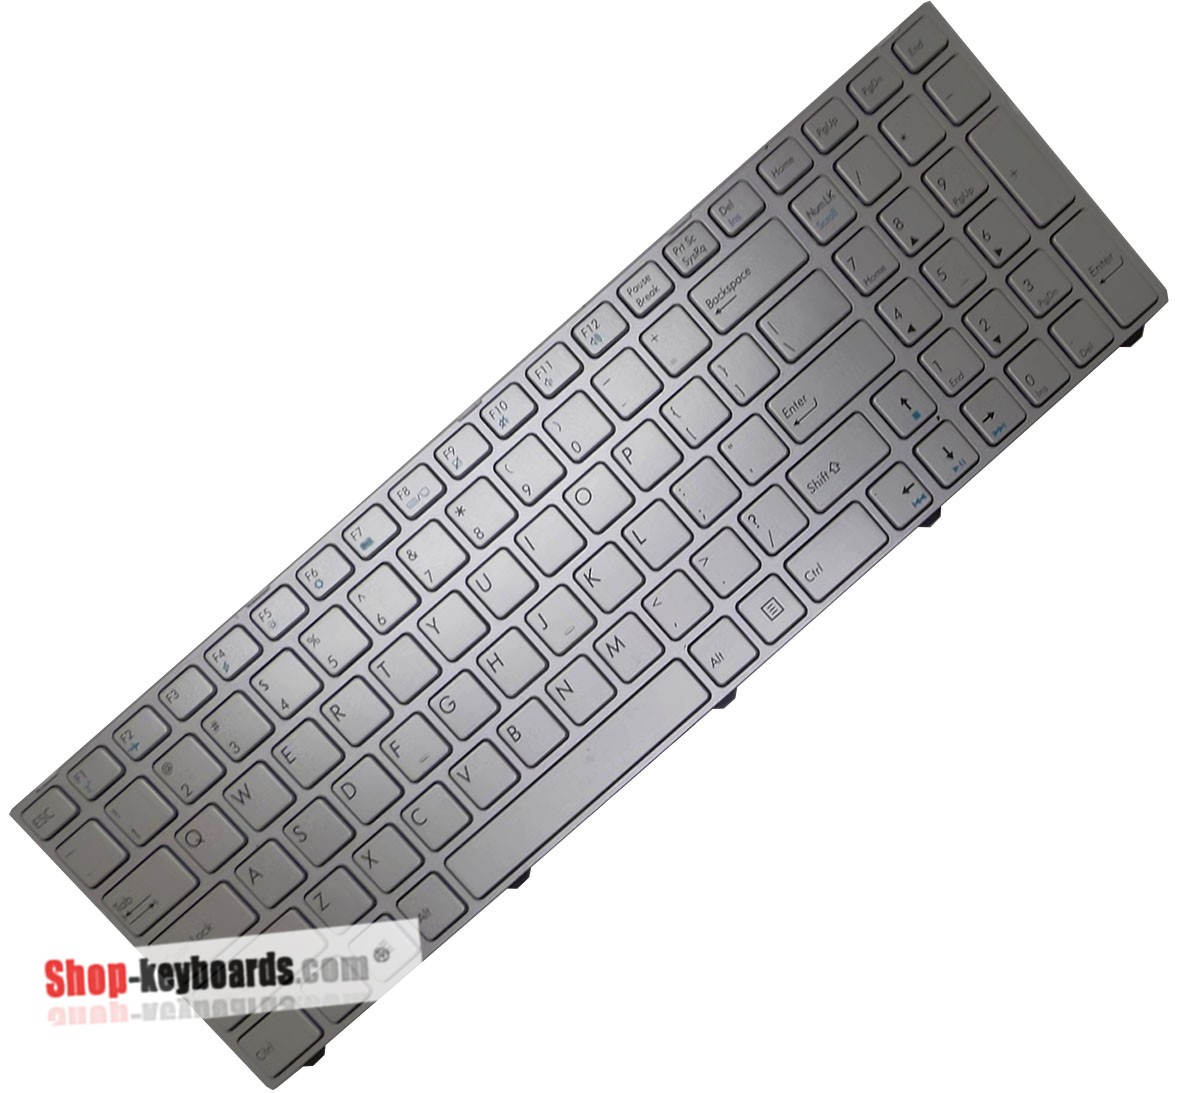 Medion AKOYA P7637 Keyboard replacement